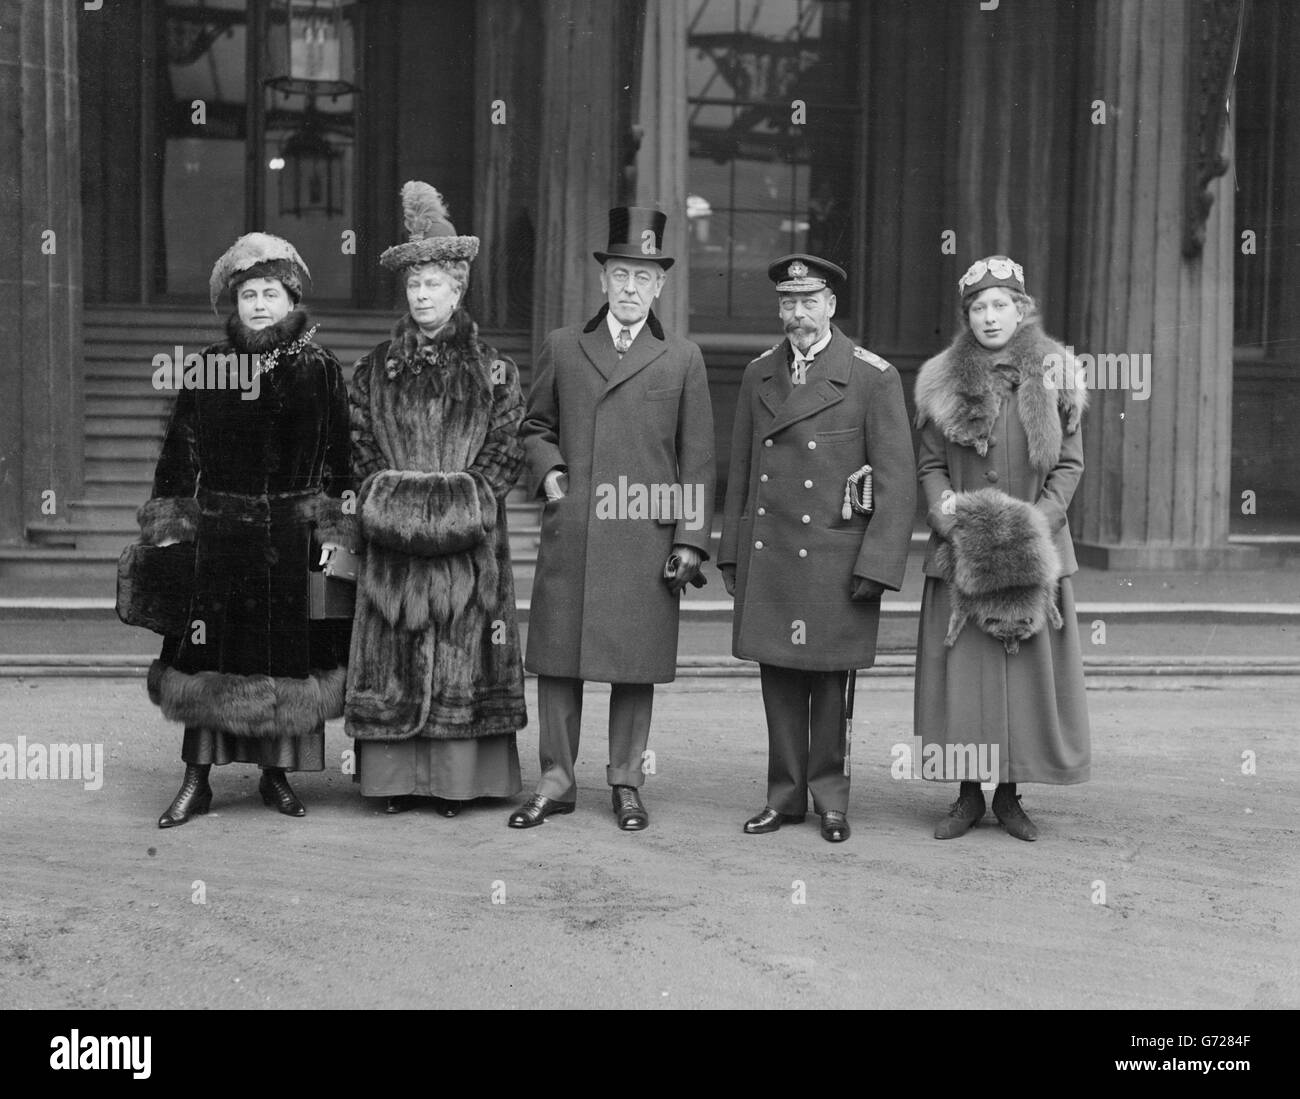 De gauche à droite : Mme Wilson, la reine Mary, le président Wilson, le roi George V et la princesse Mary posent pour une photographie avant le départ des présidents de Buckingham Palace, 1918. Banque D'Images